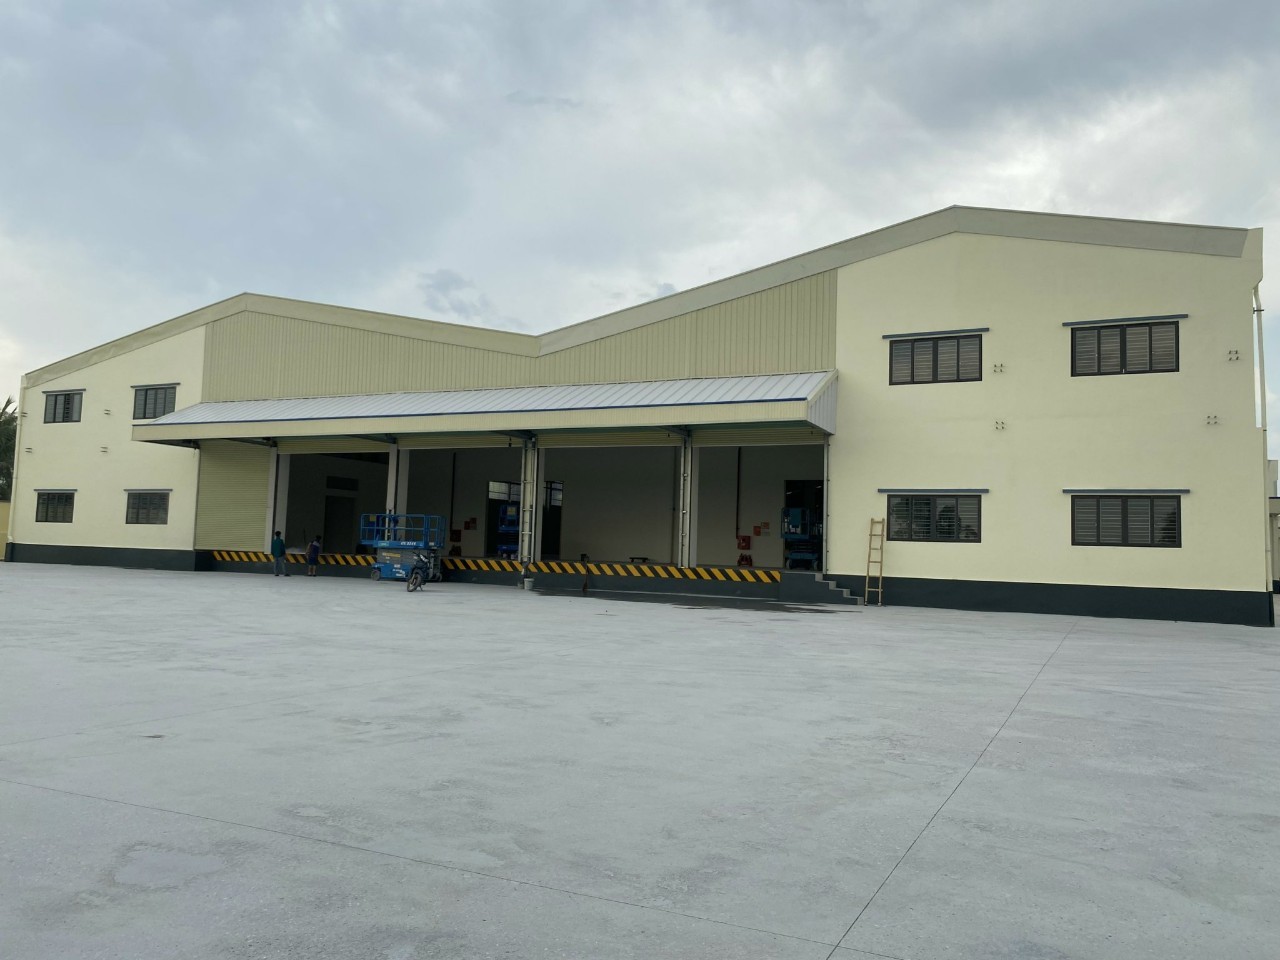 Cho thuê nhà xưởng mới trong và ngoài Khu công nghiệp Vsip, Bắc Ninh DT đa dạng 1000m2 đến 200.000m